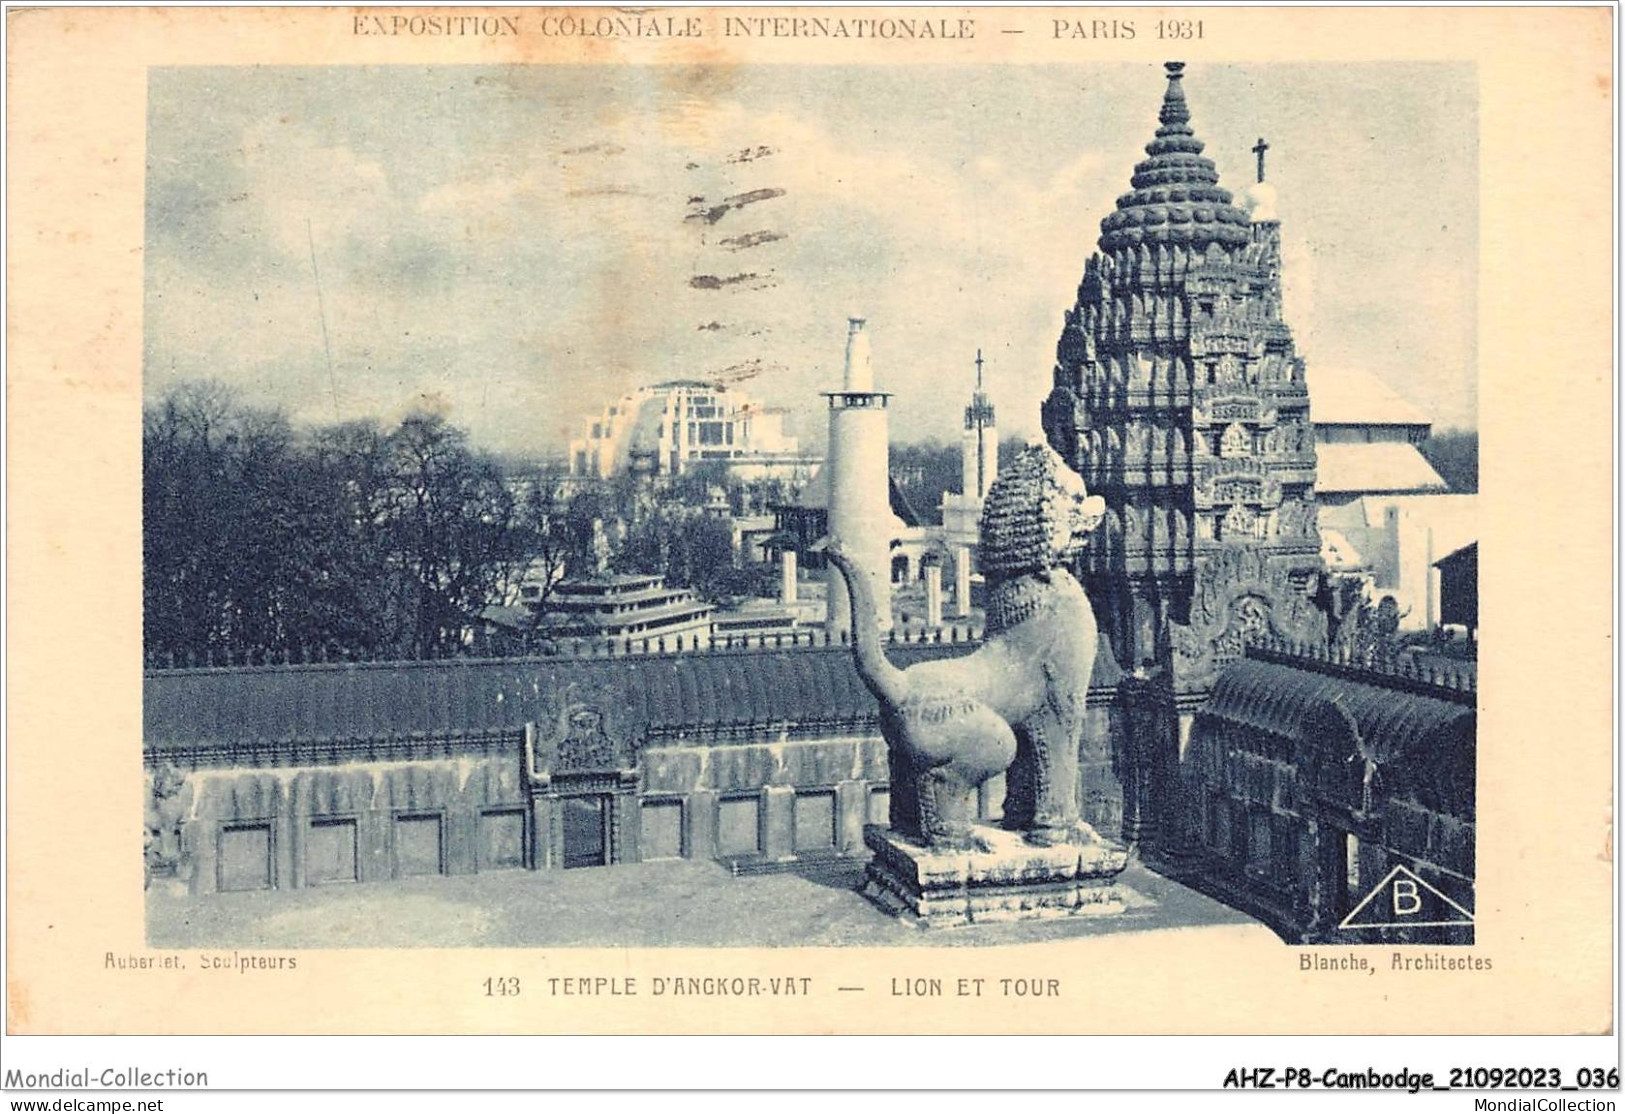 AHZP8-CAMBODGE-0701 - EXPOSITION COLONIALE INTERNATIONALE - PARIS 1931 - TEMPLE D'ANGKOR-VAT - LION ET TOUR - Cambodge